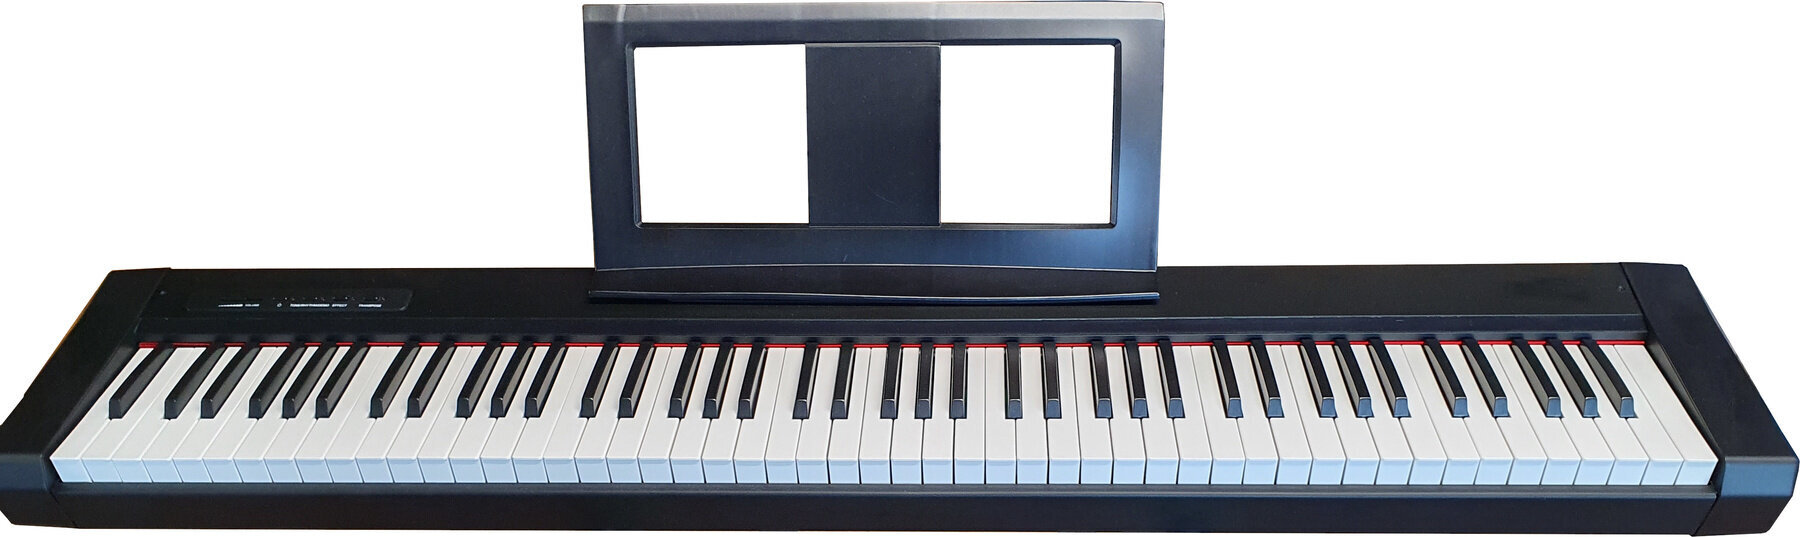 Piano digital Pianonova ZSF-881 Demo